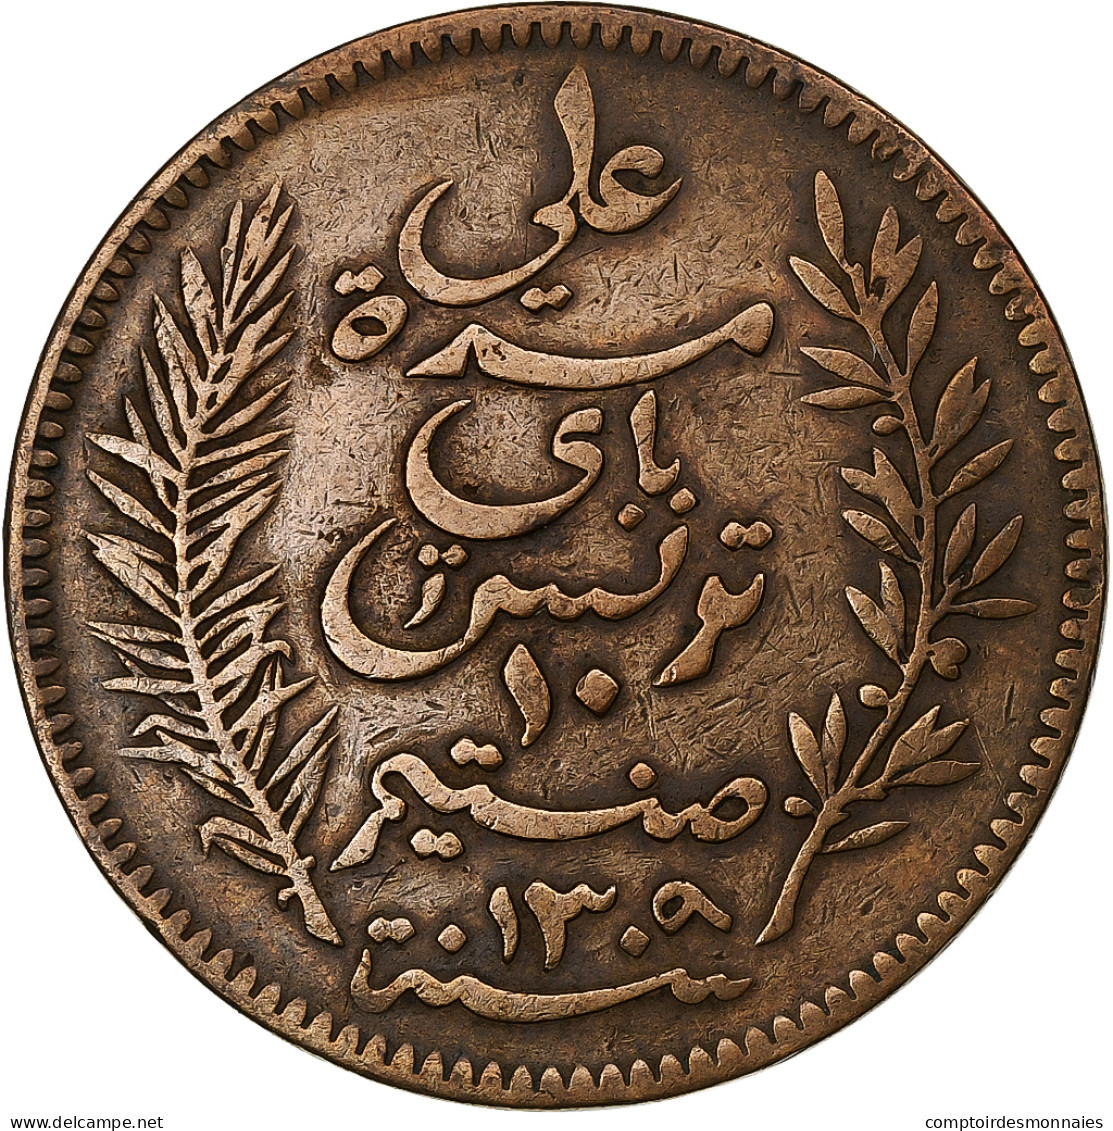 Tunisie, Ali Bey, 10 Centimes, 1892, Paris, Bronze, TB+, KM:222 - Tunesien